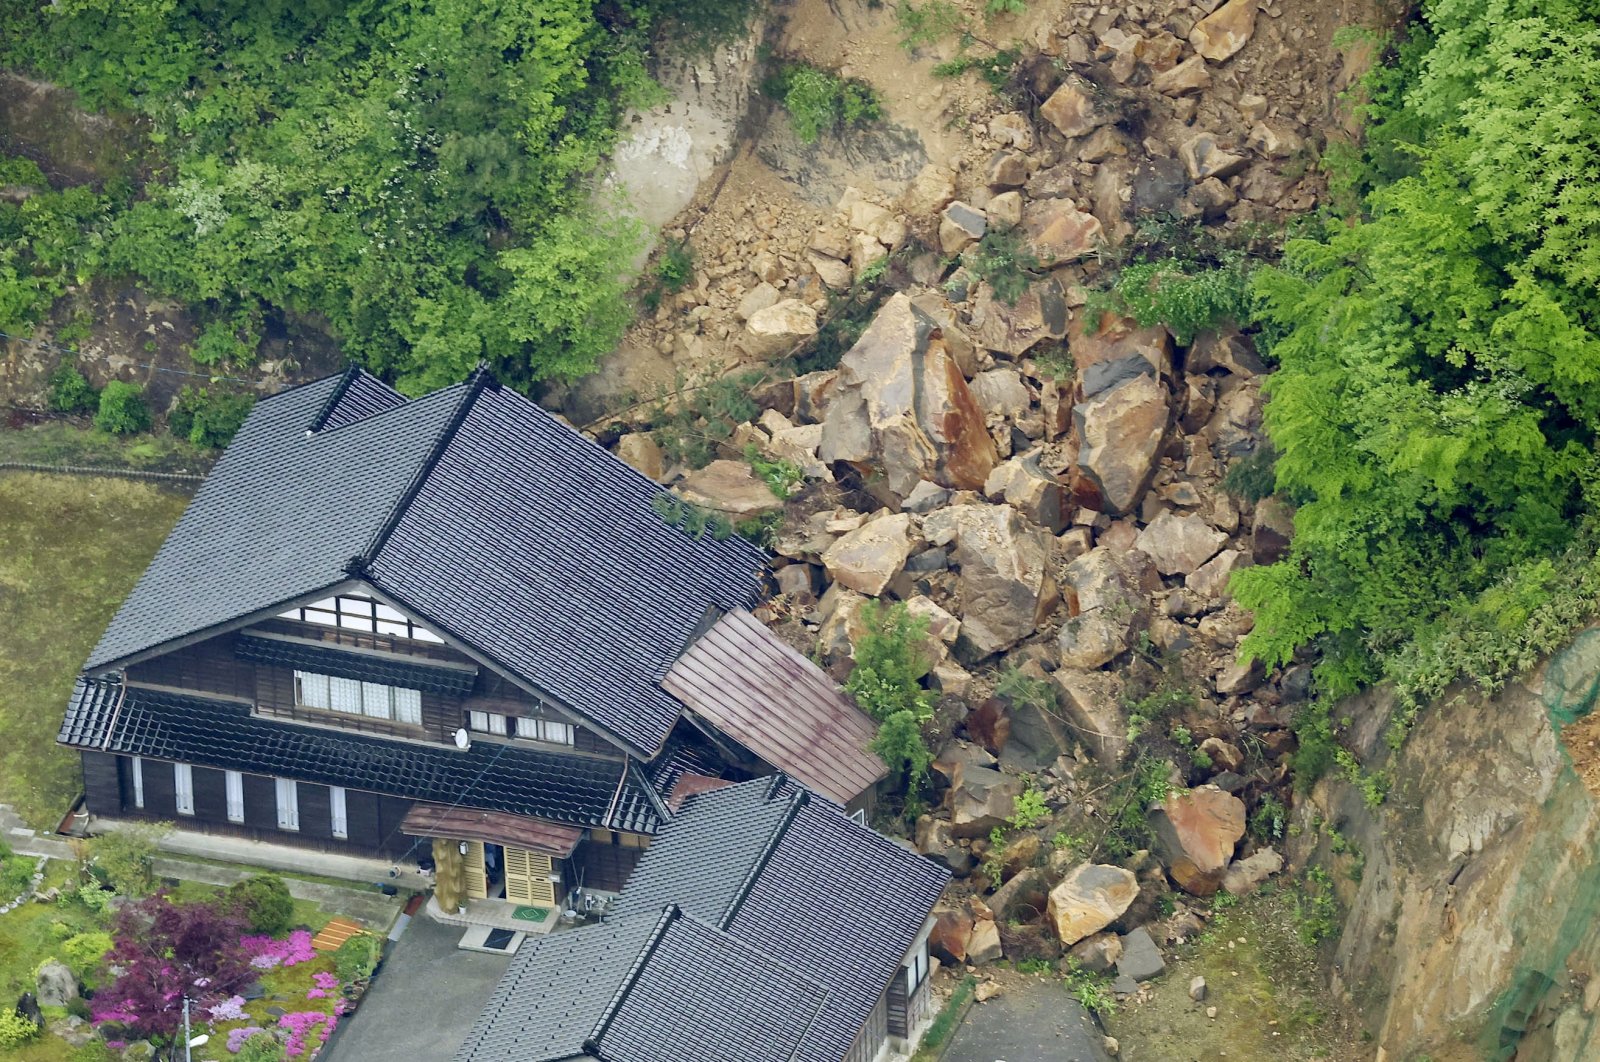 Gempa susulan mengguncang Jepang sehari setelah gempa kuat menewaskan 1 orang